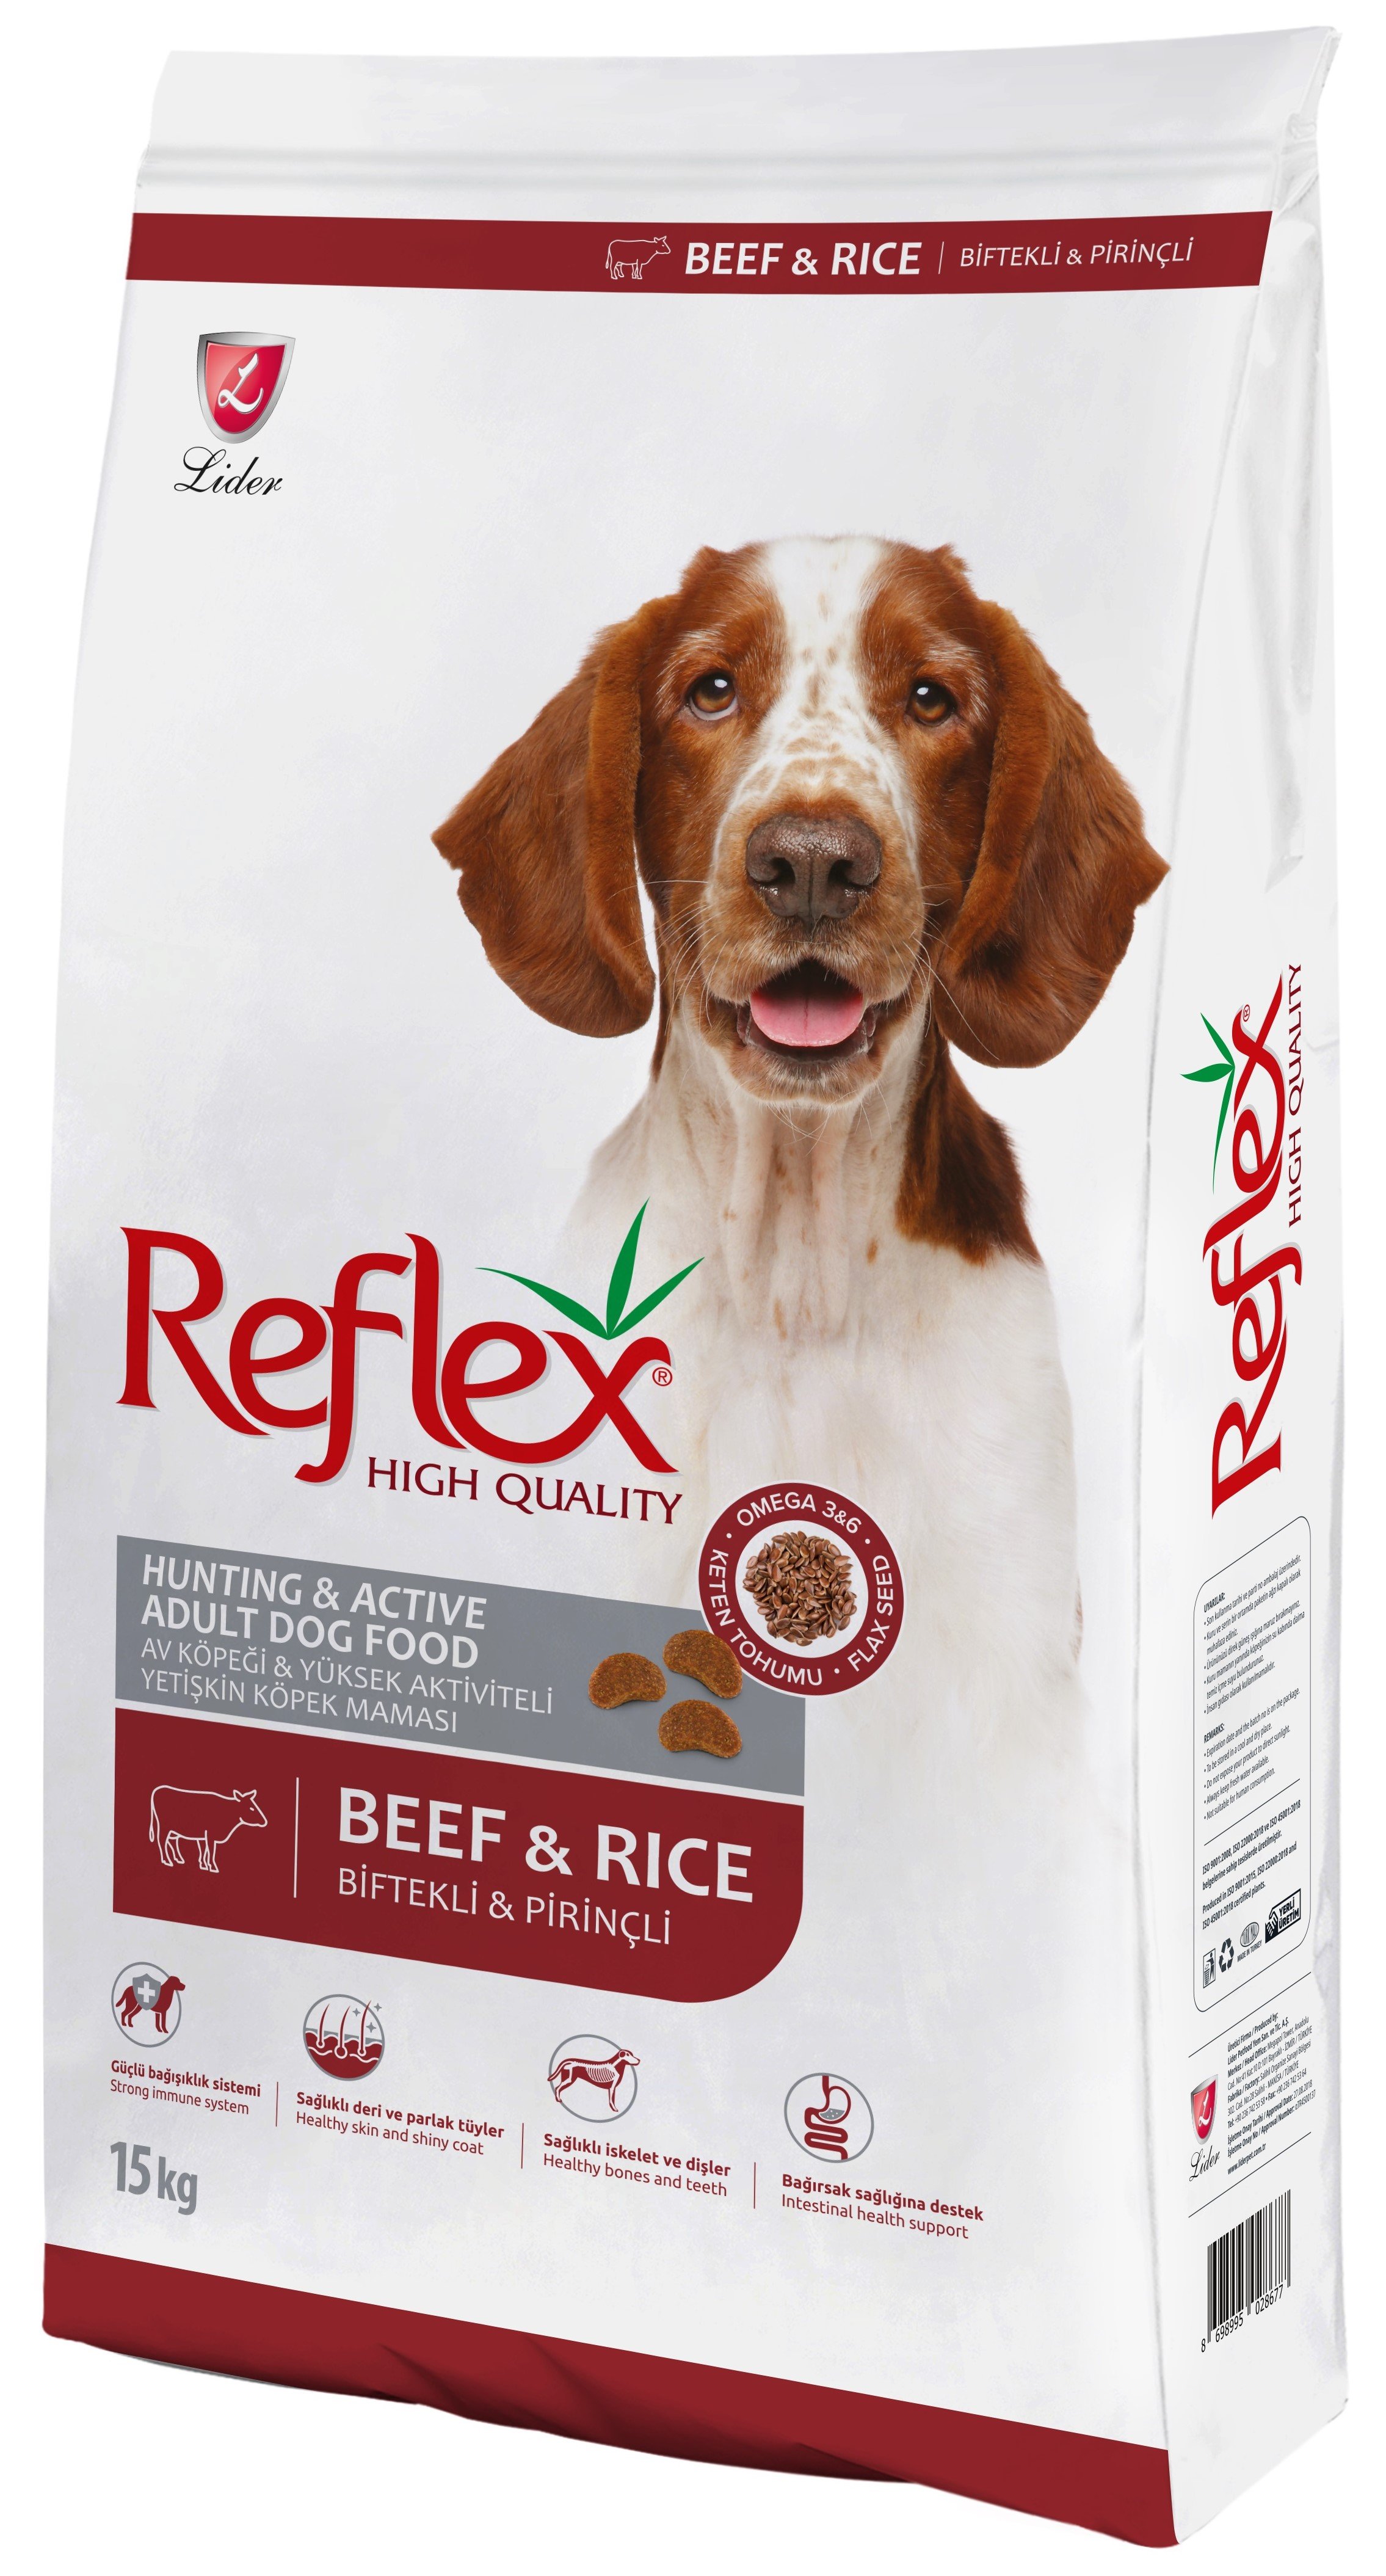 Reflex Yüksek Enerjili Biftekli Ve Pirinçli Yetişkin Köpek Maması 15 Kg